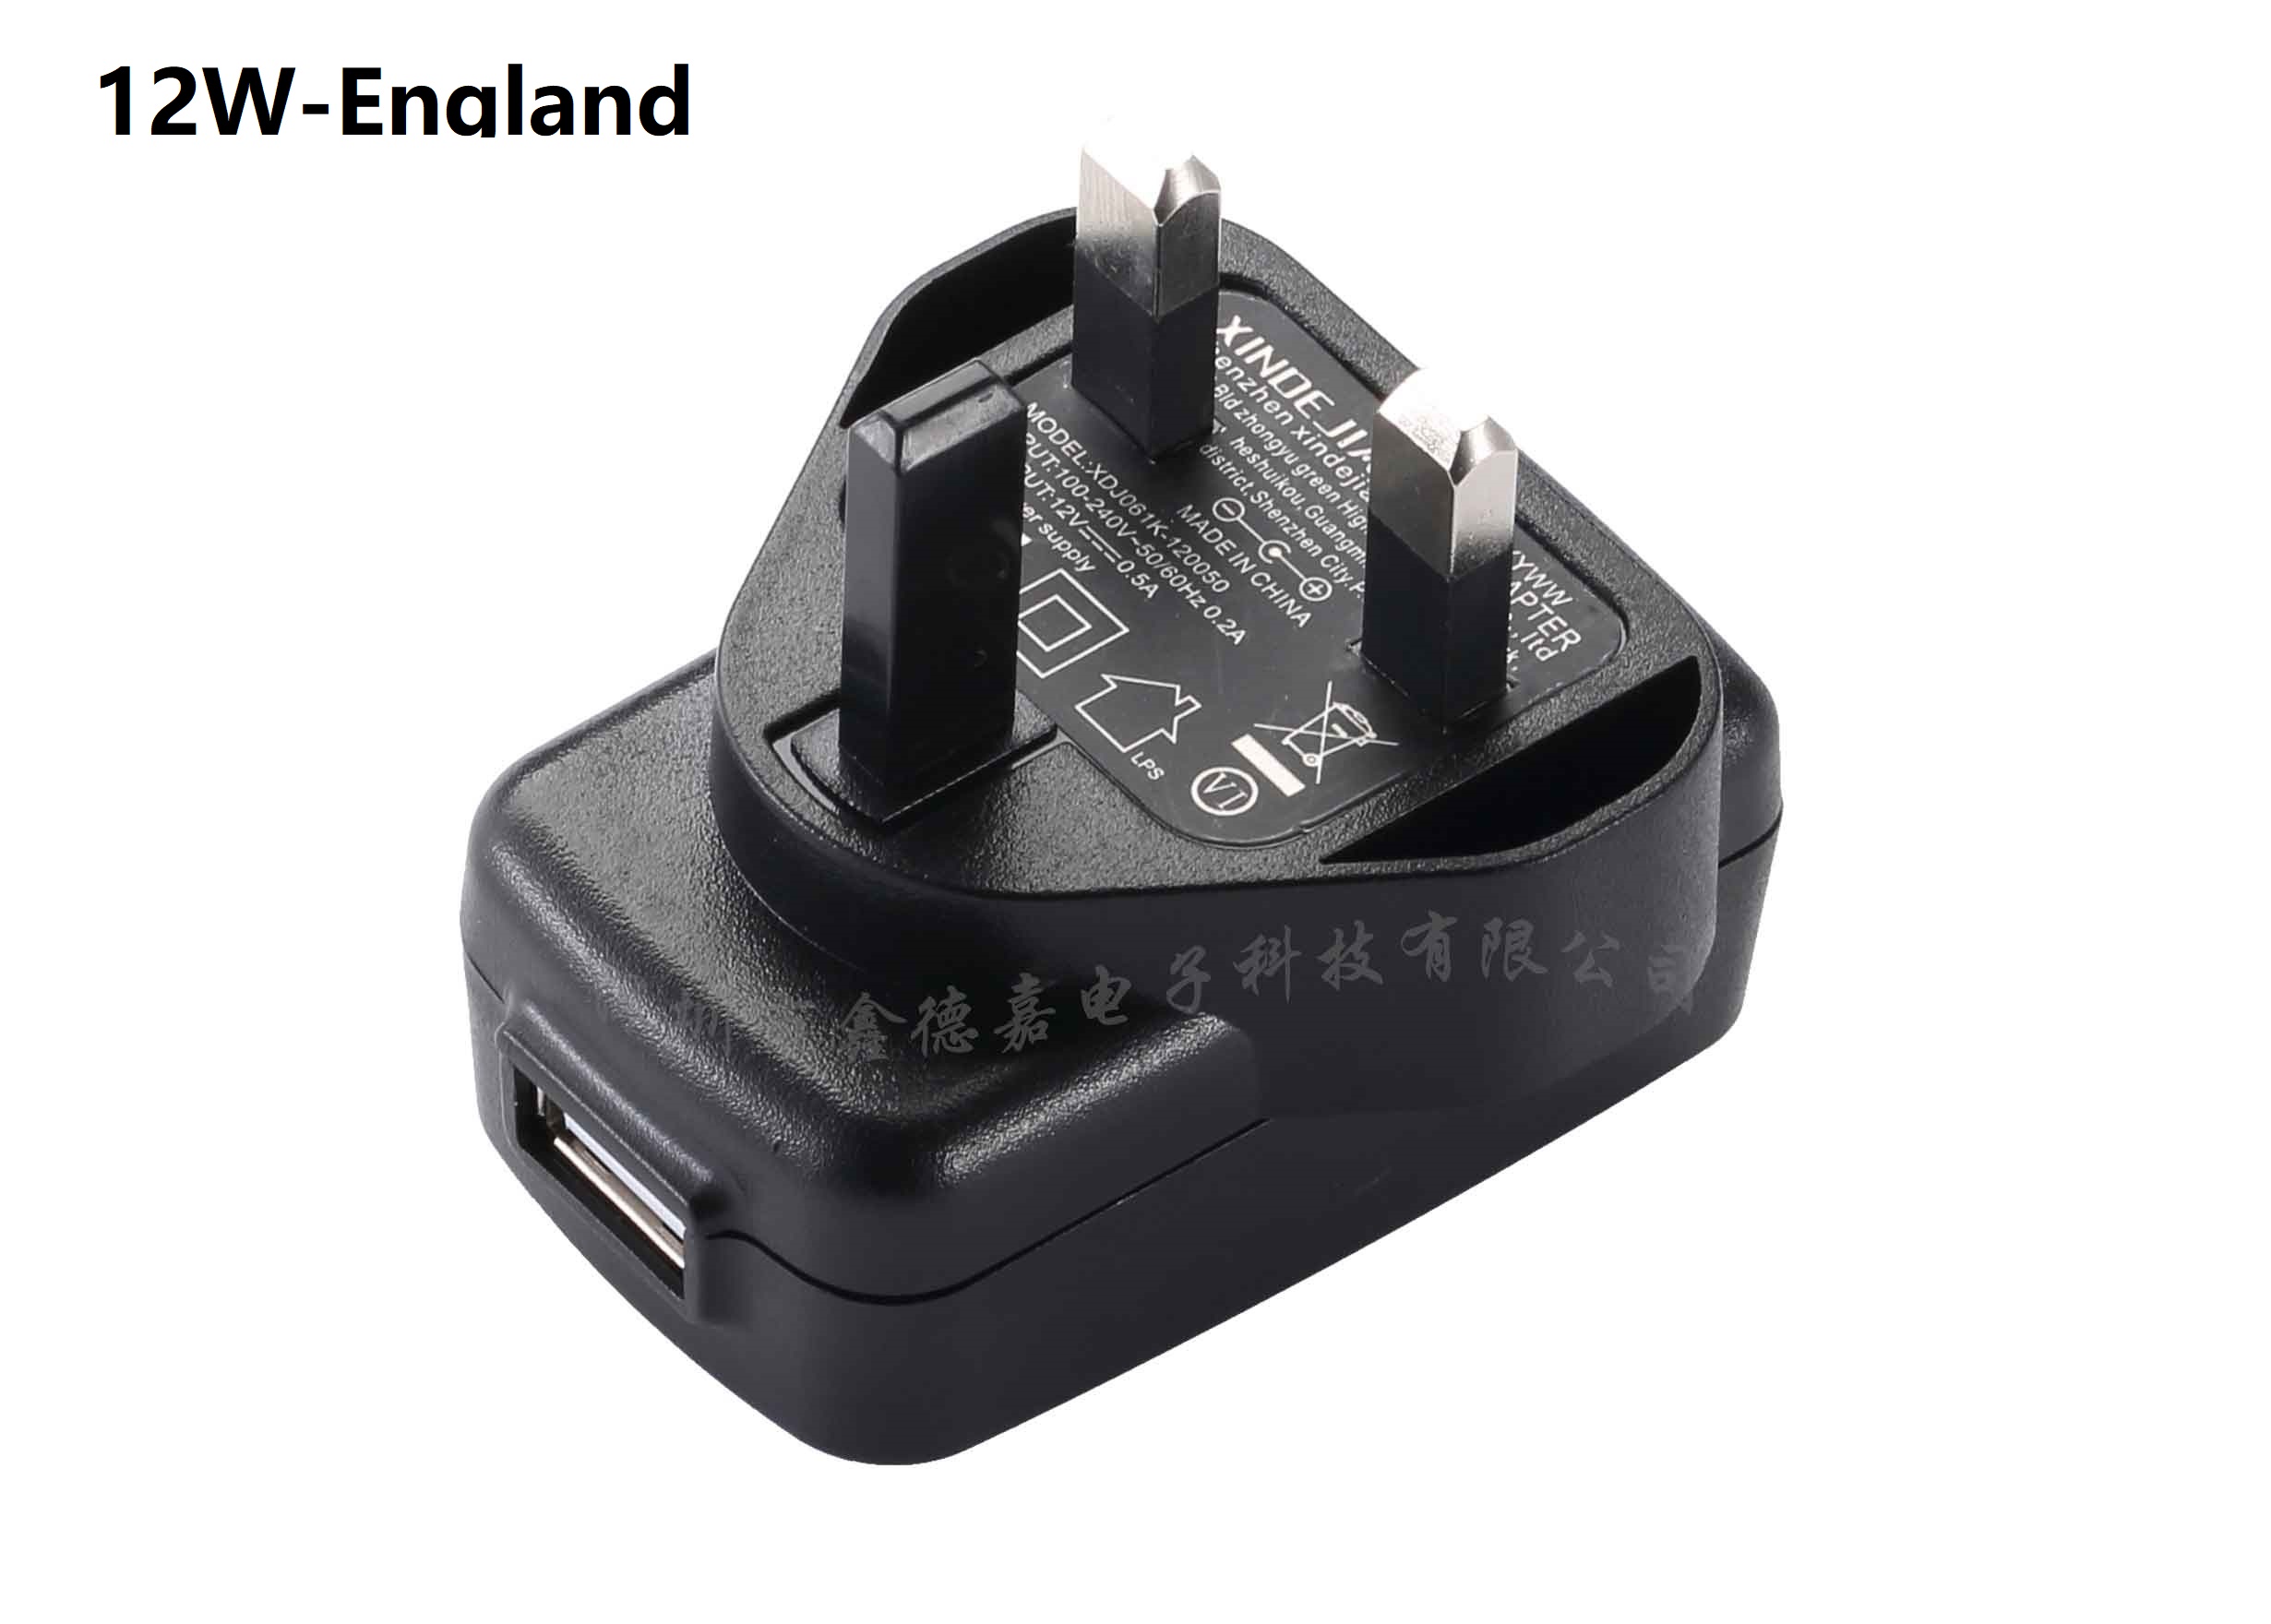 12W-England USB